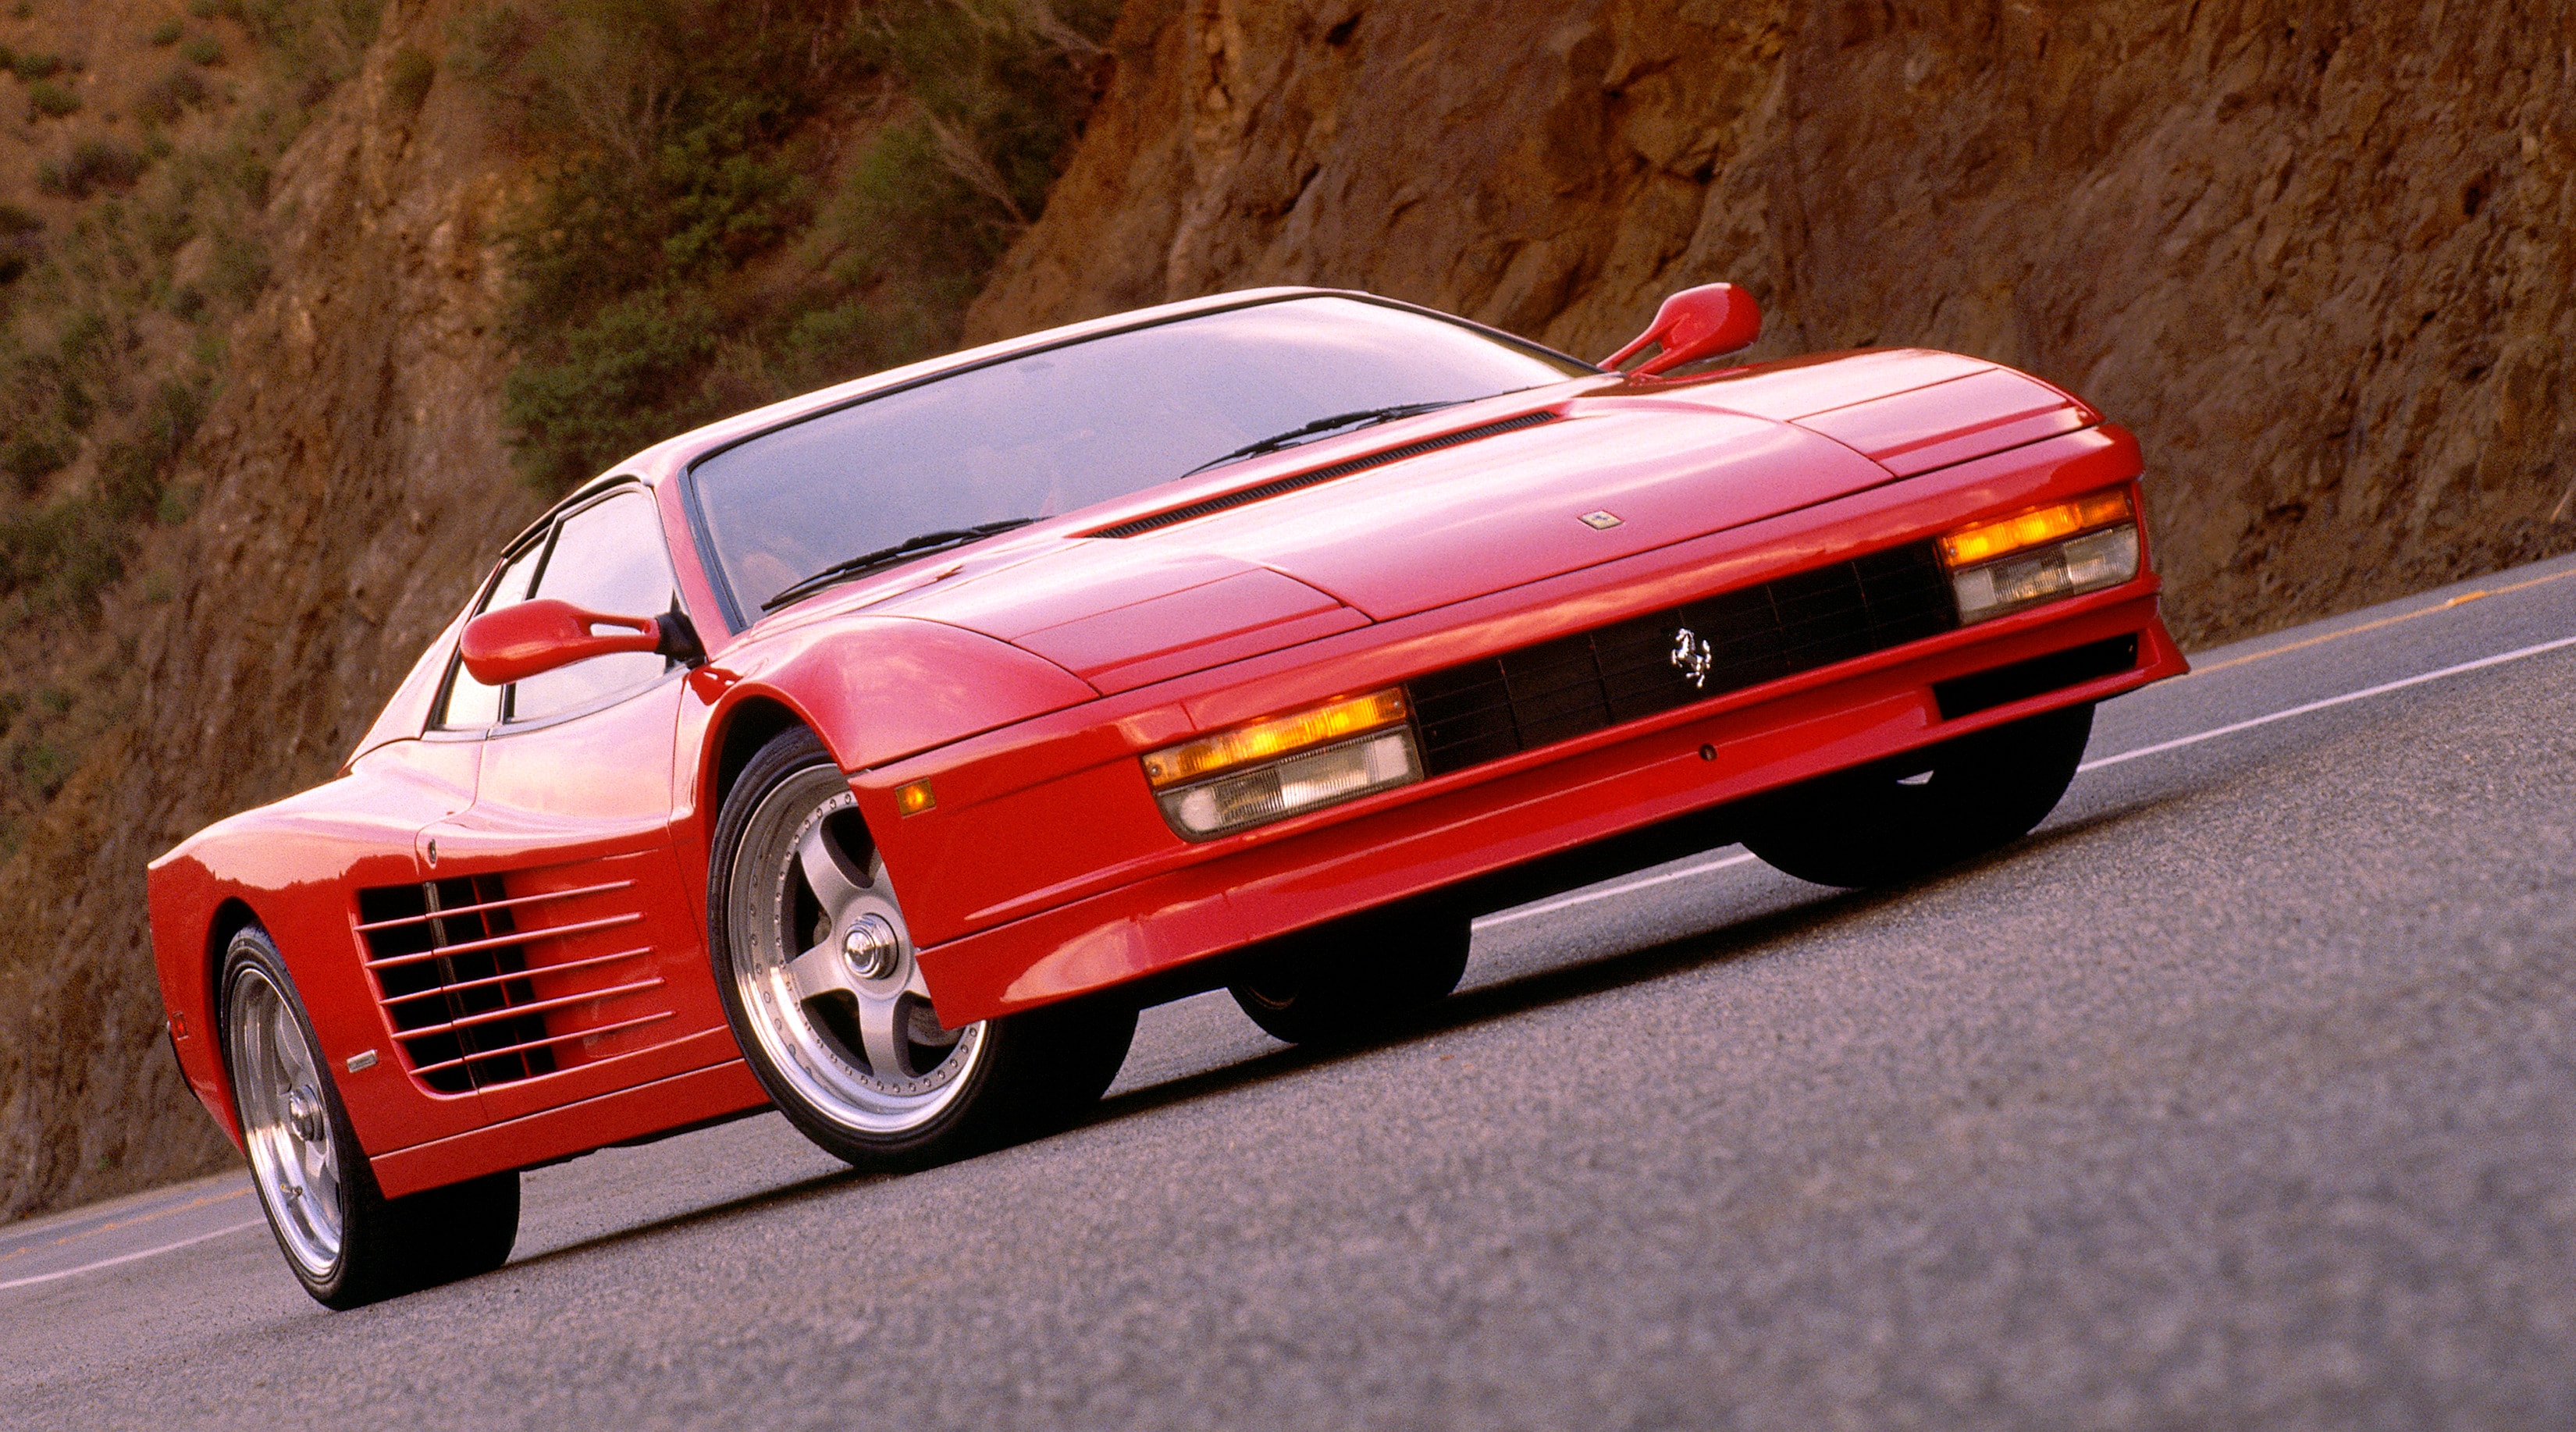 Il celebre modello della Ferrari Testarossa, apprezzata in tutto il mondo e progettata nel 1984